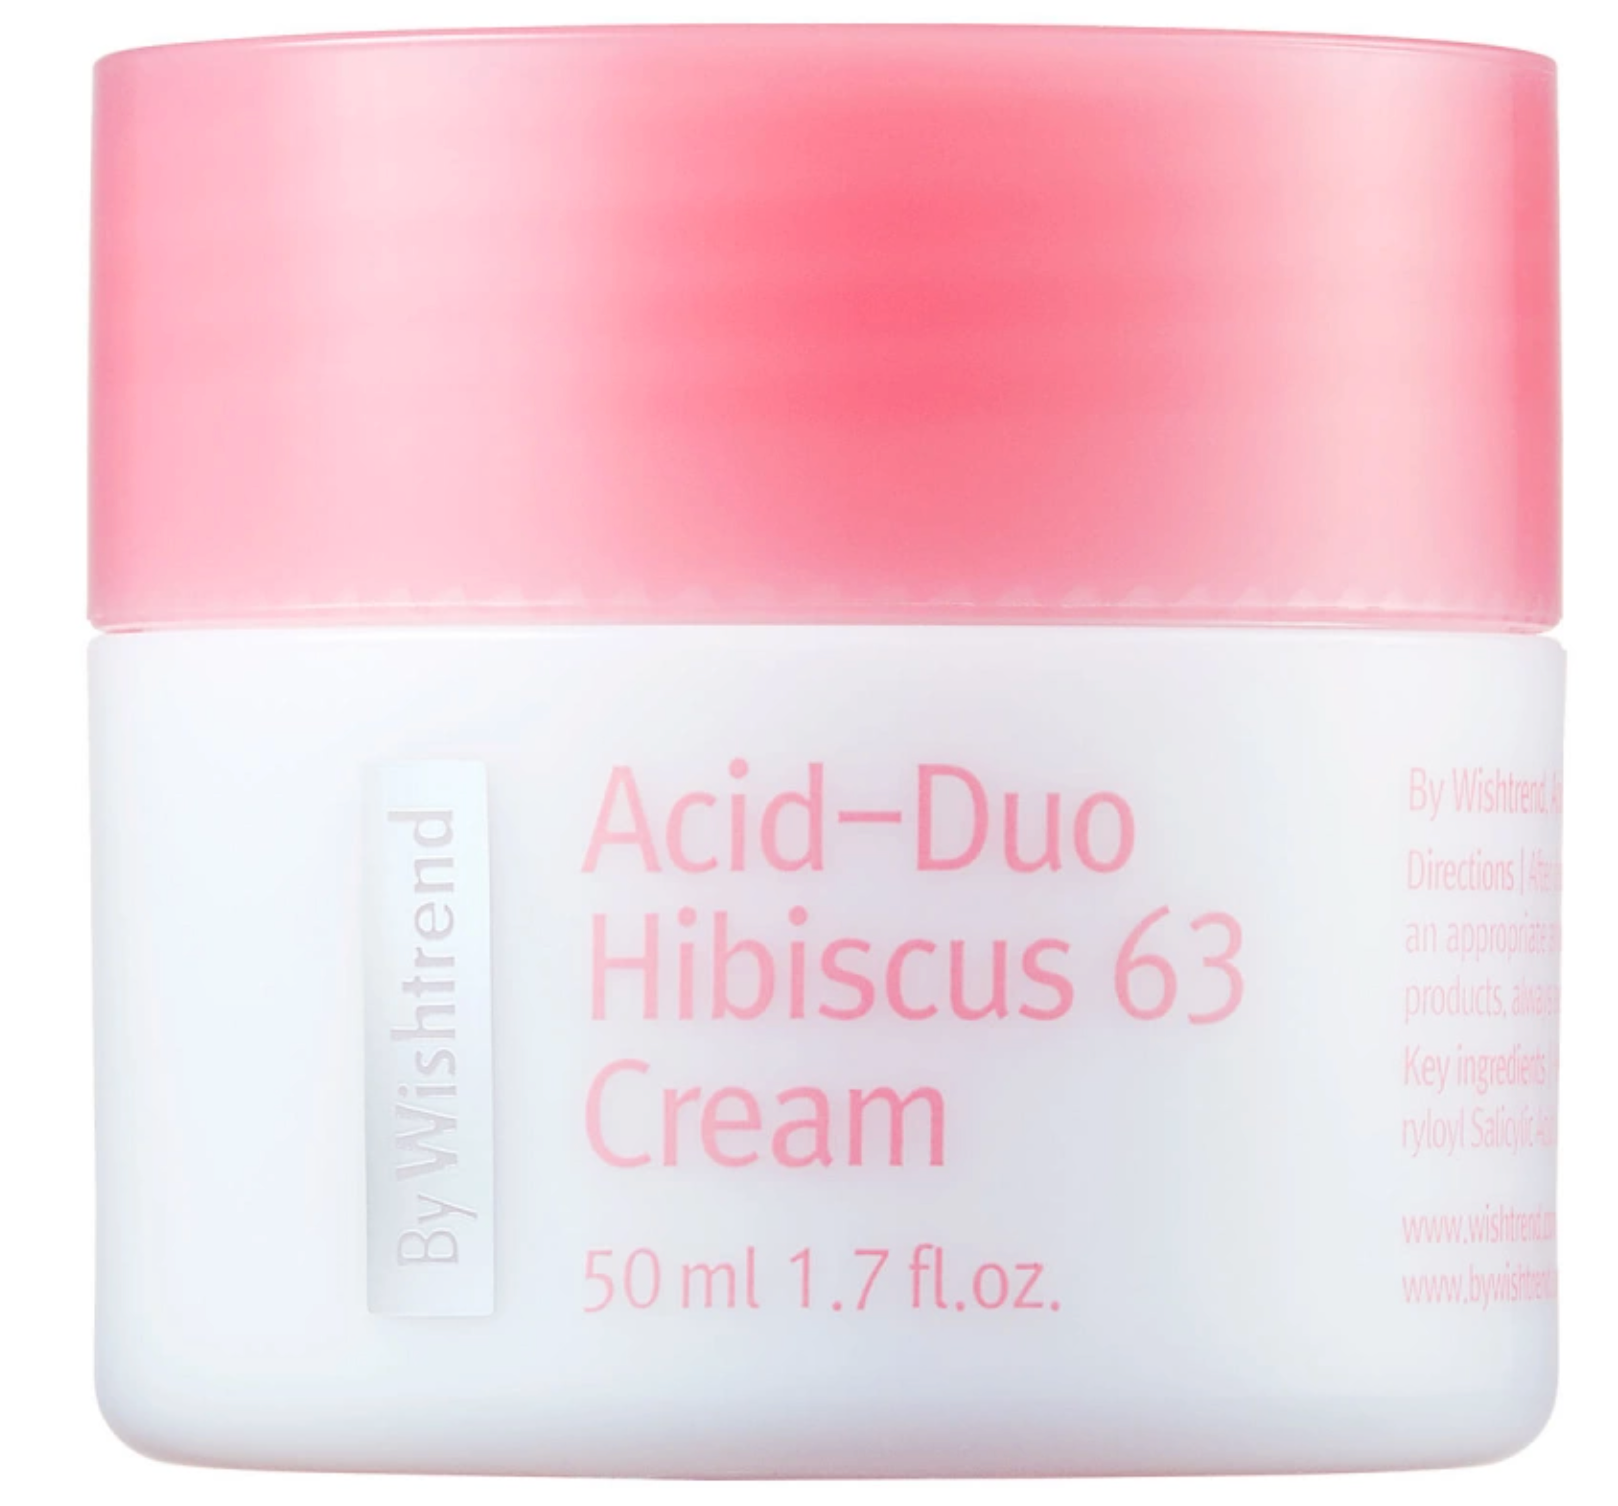 Hibiscus 63 acid duo 